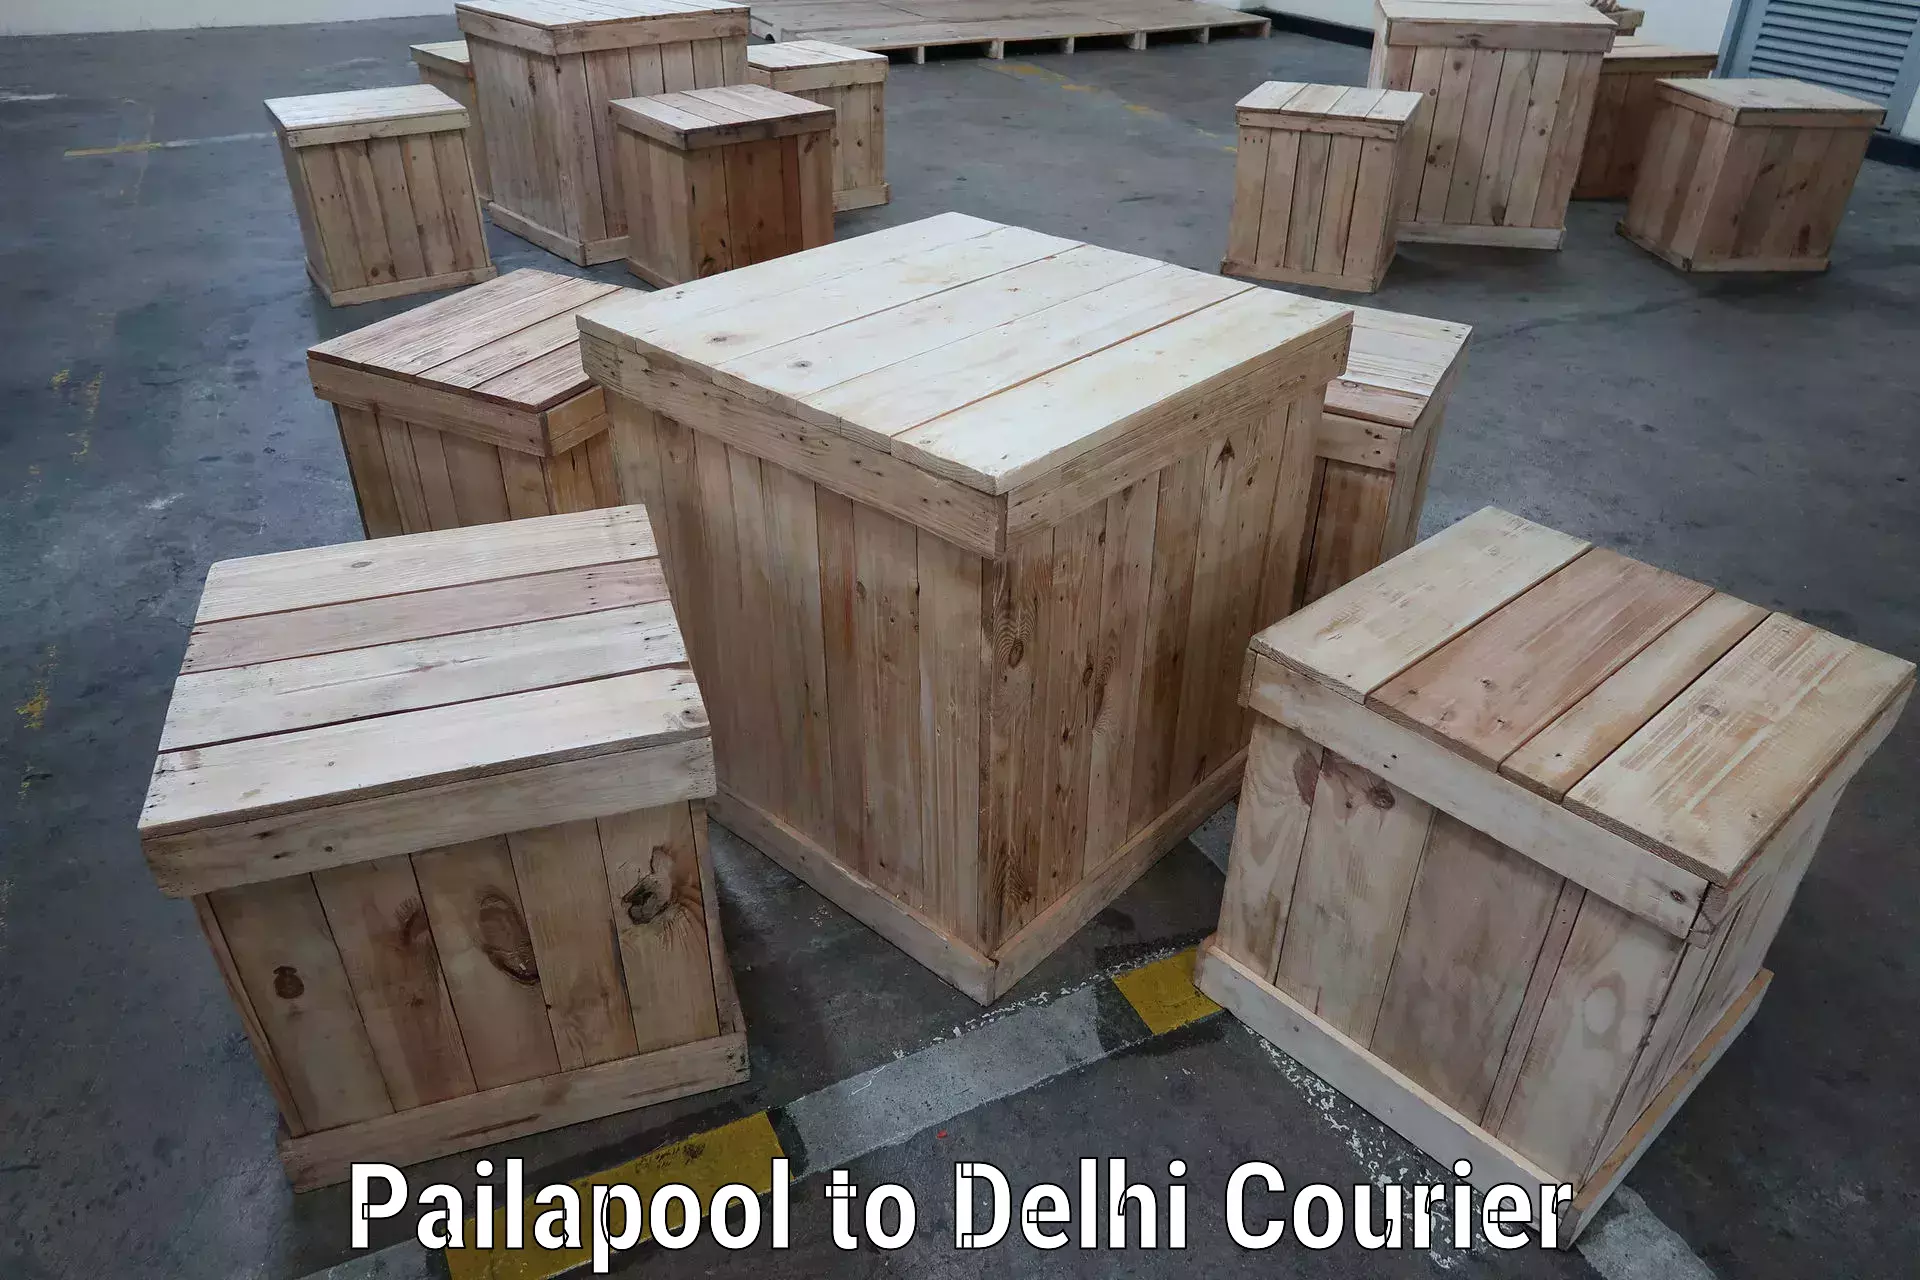 Express logistics service Pailapool to Delhi